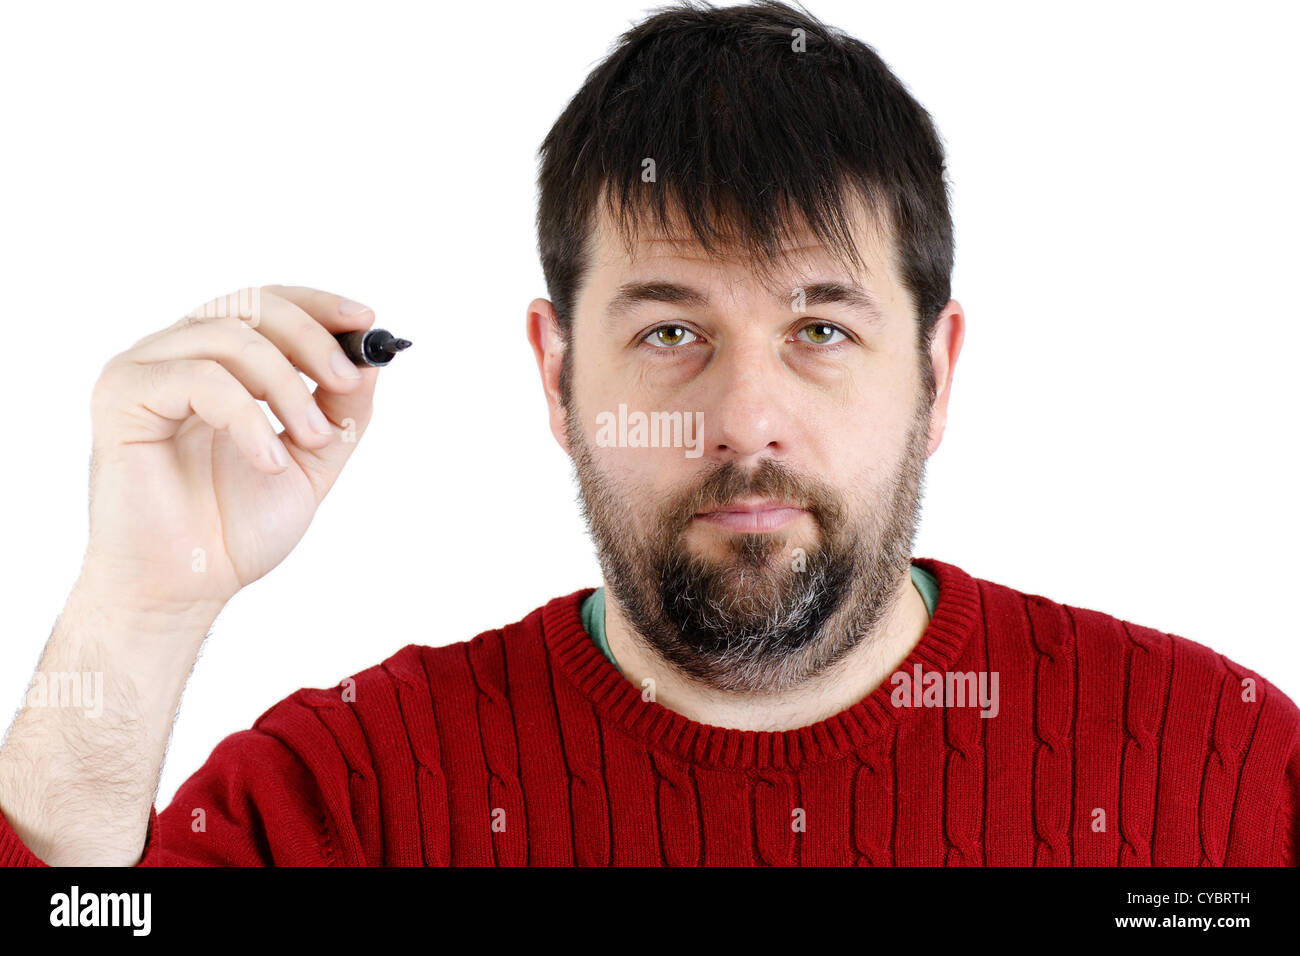 Guy ordinario, regolari joe, pronti a scrivere qualcosa con il suo grande nero pennarello, real candida persona. Foto Stock